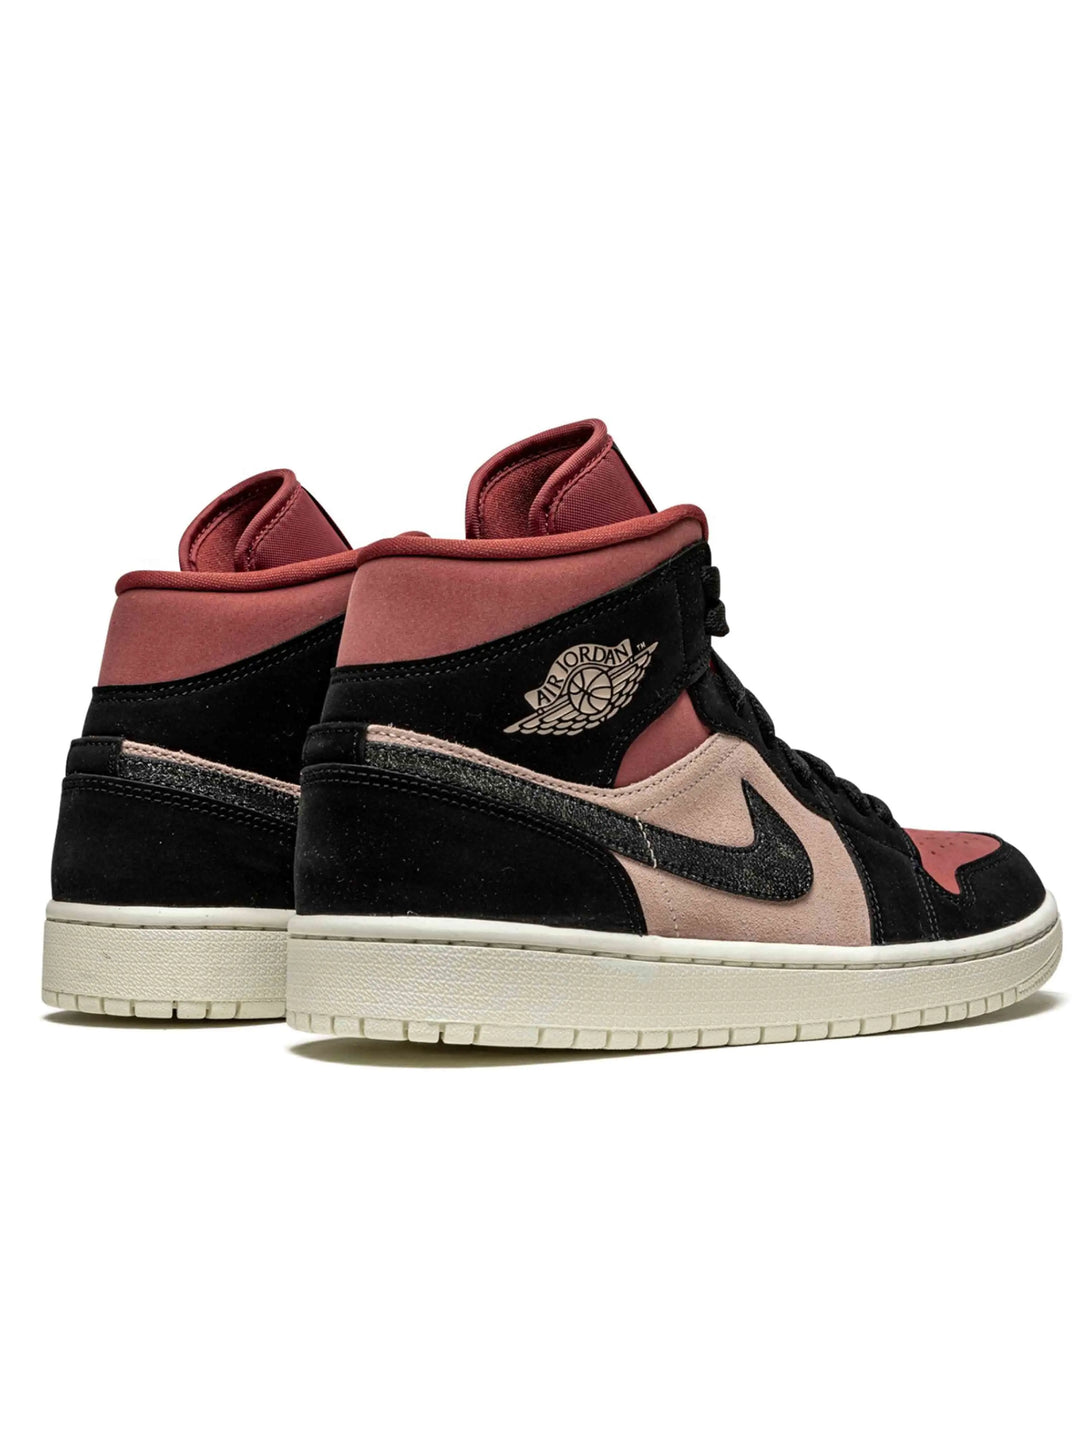 Nike Air Jordan 1 Mid Burgundy Dusty Pink [W] Prior